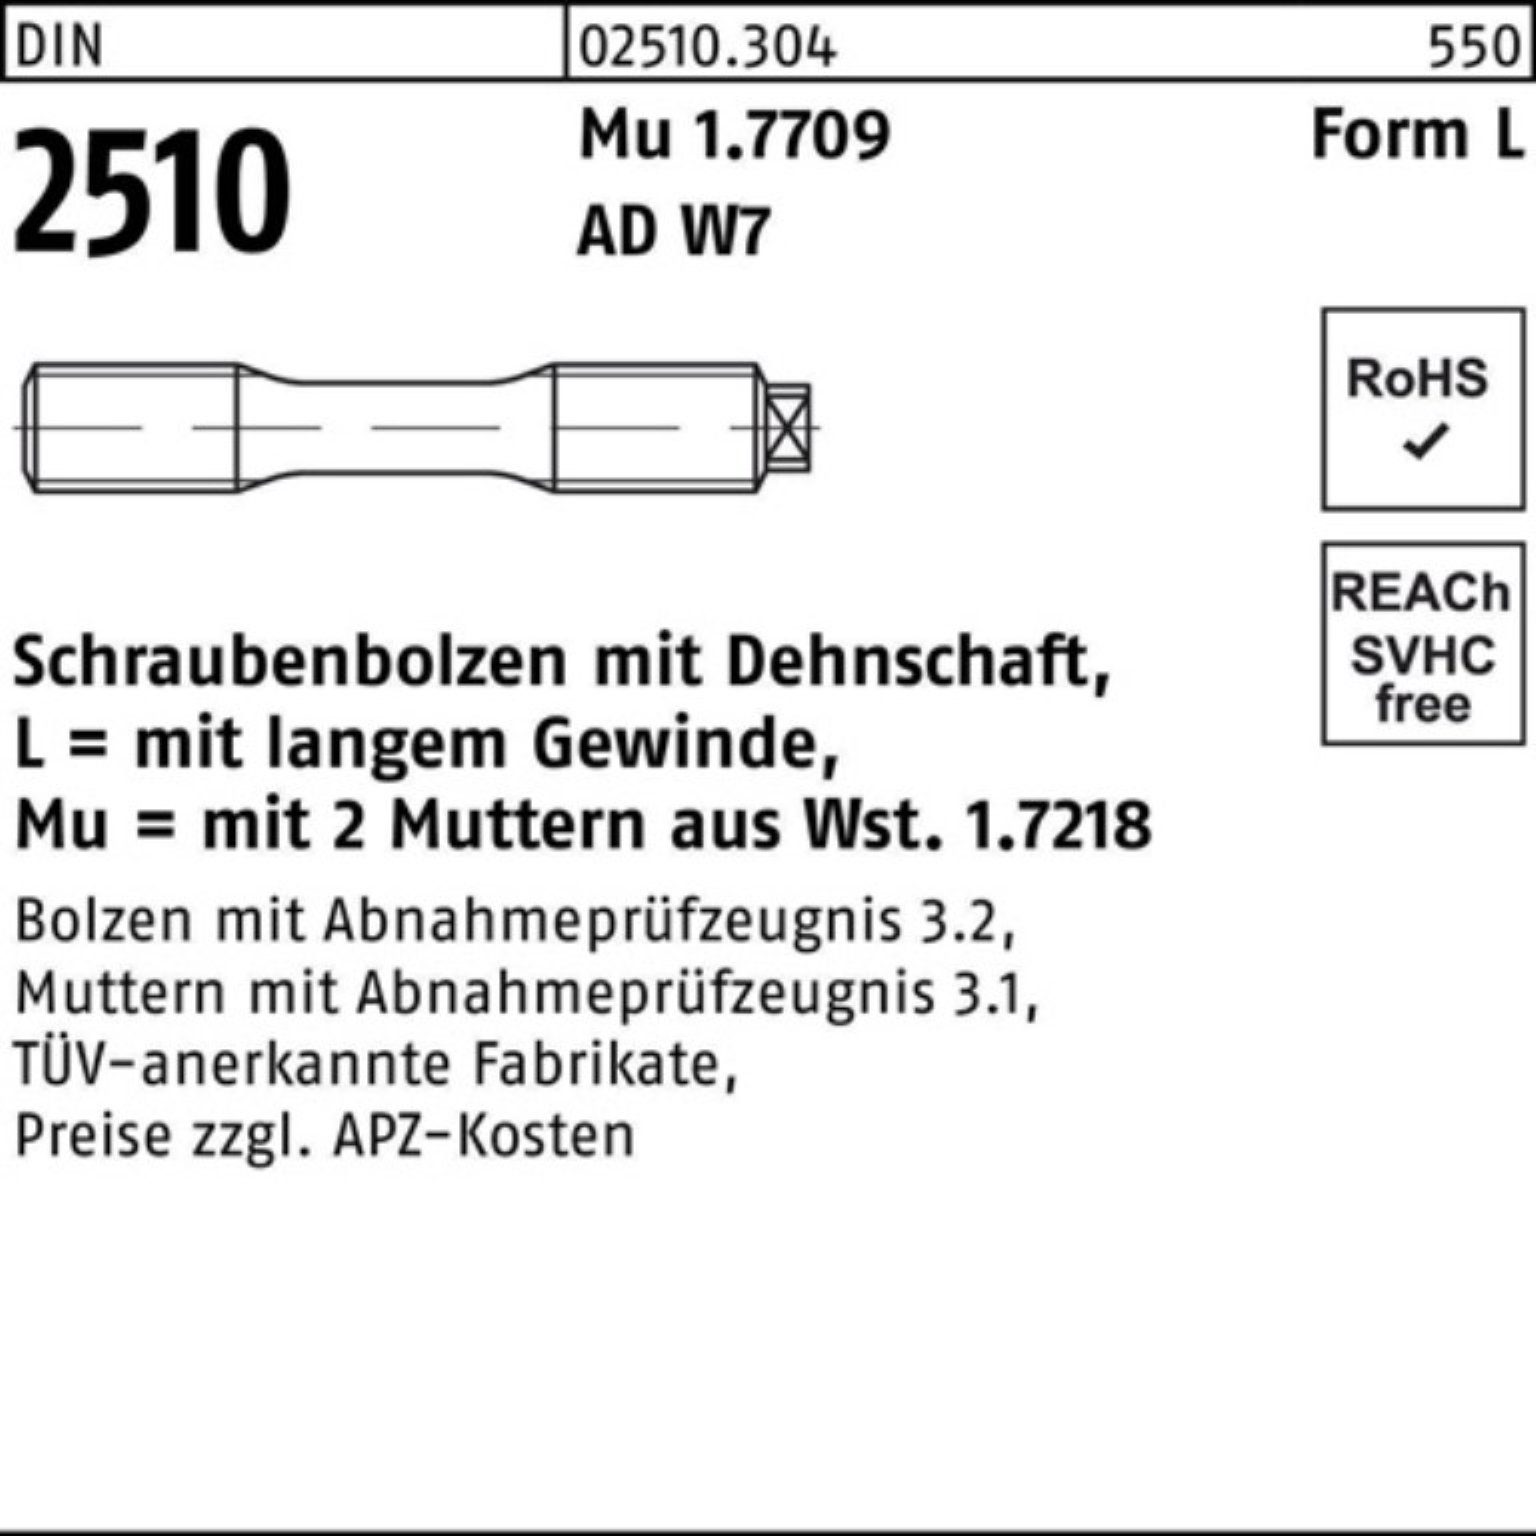 2510 LM Mu 100er Schraubenbolzen Reyher DIN Dehnschaft/2Muttern Muttern 12x Pack 110